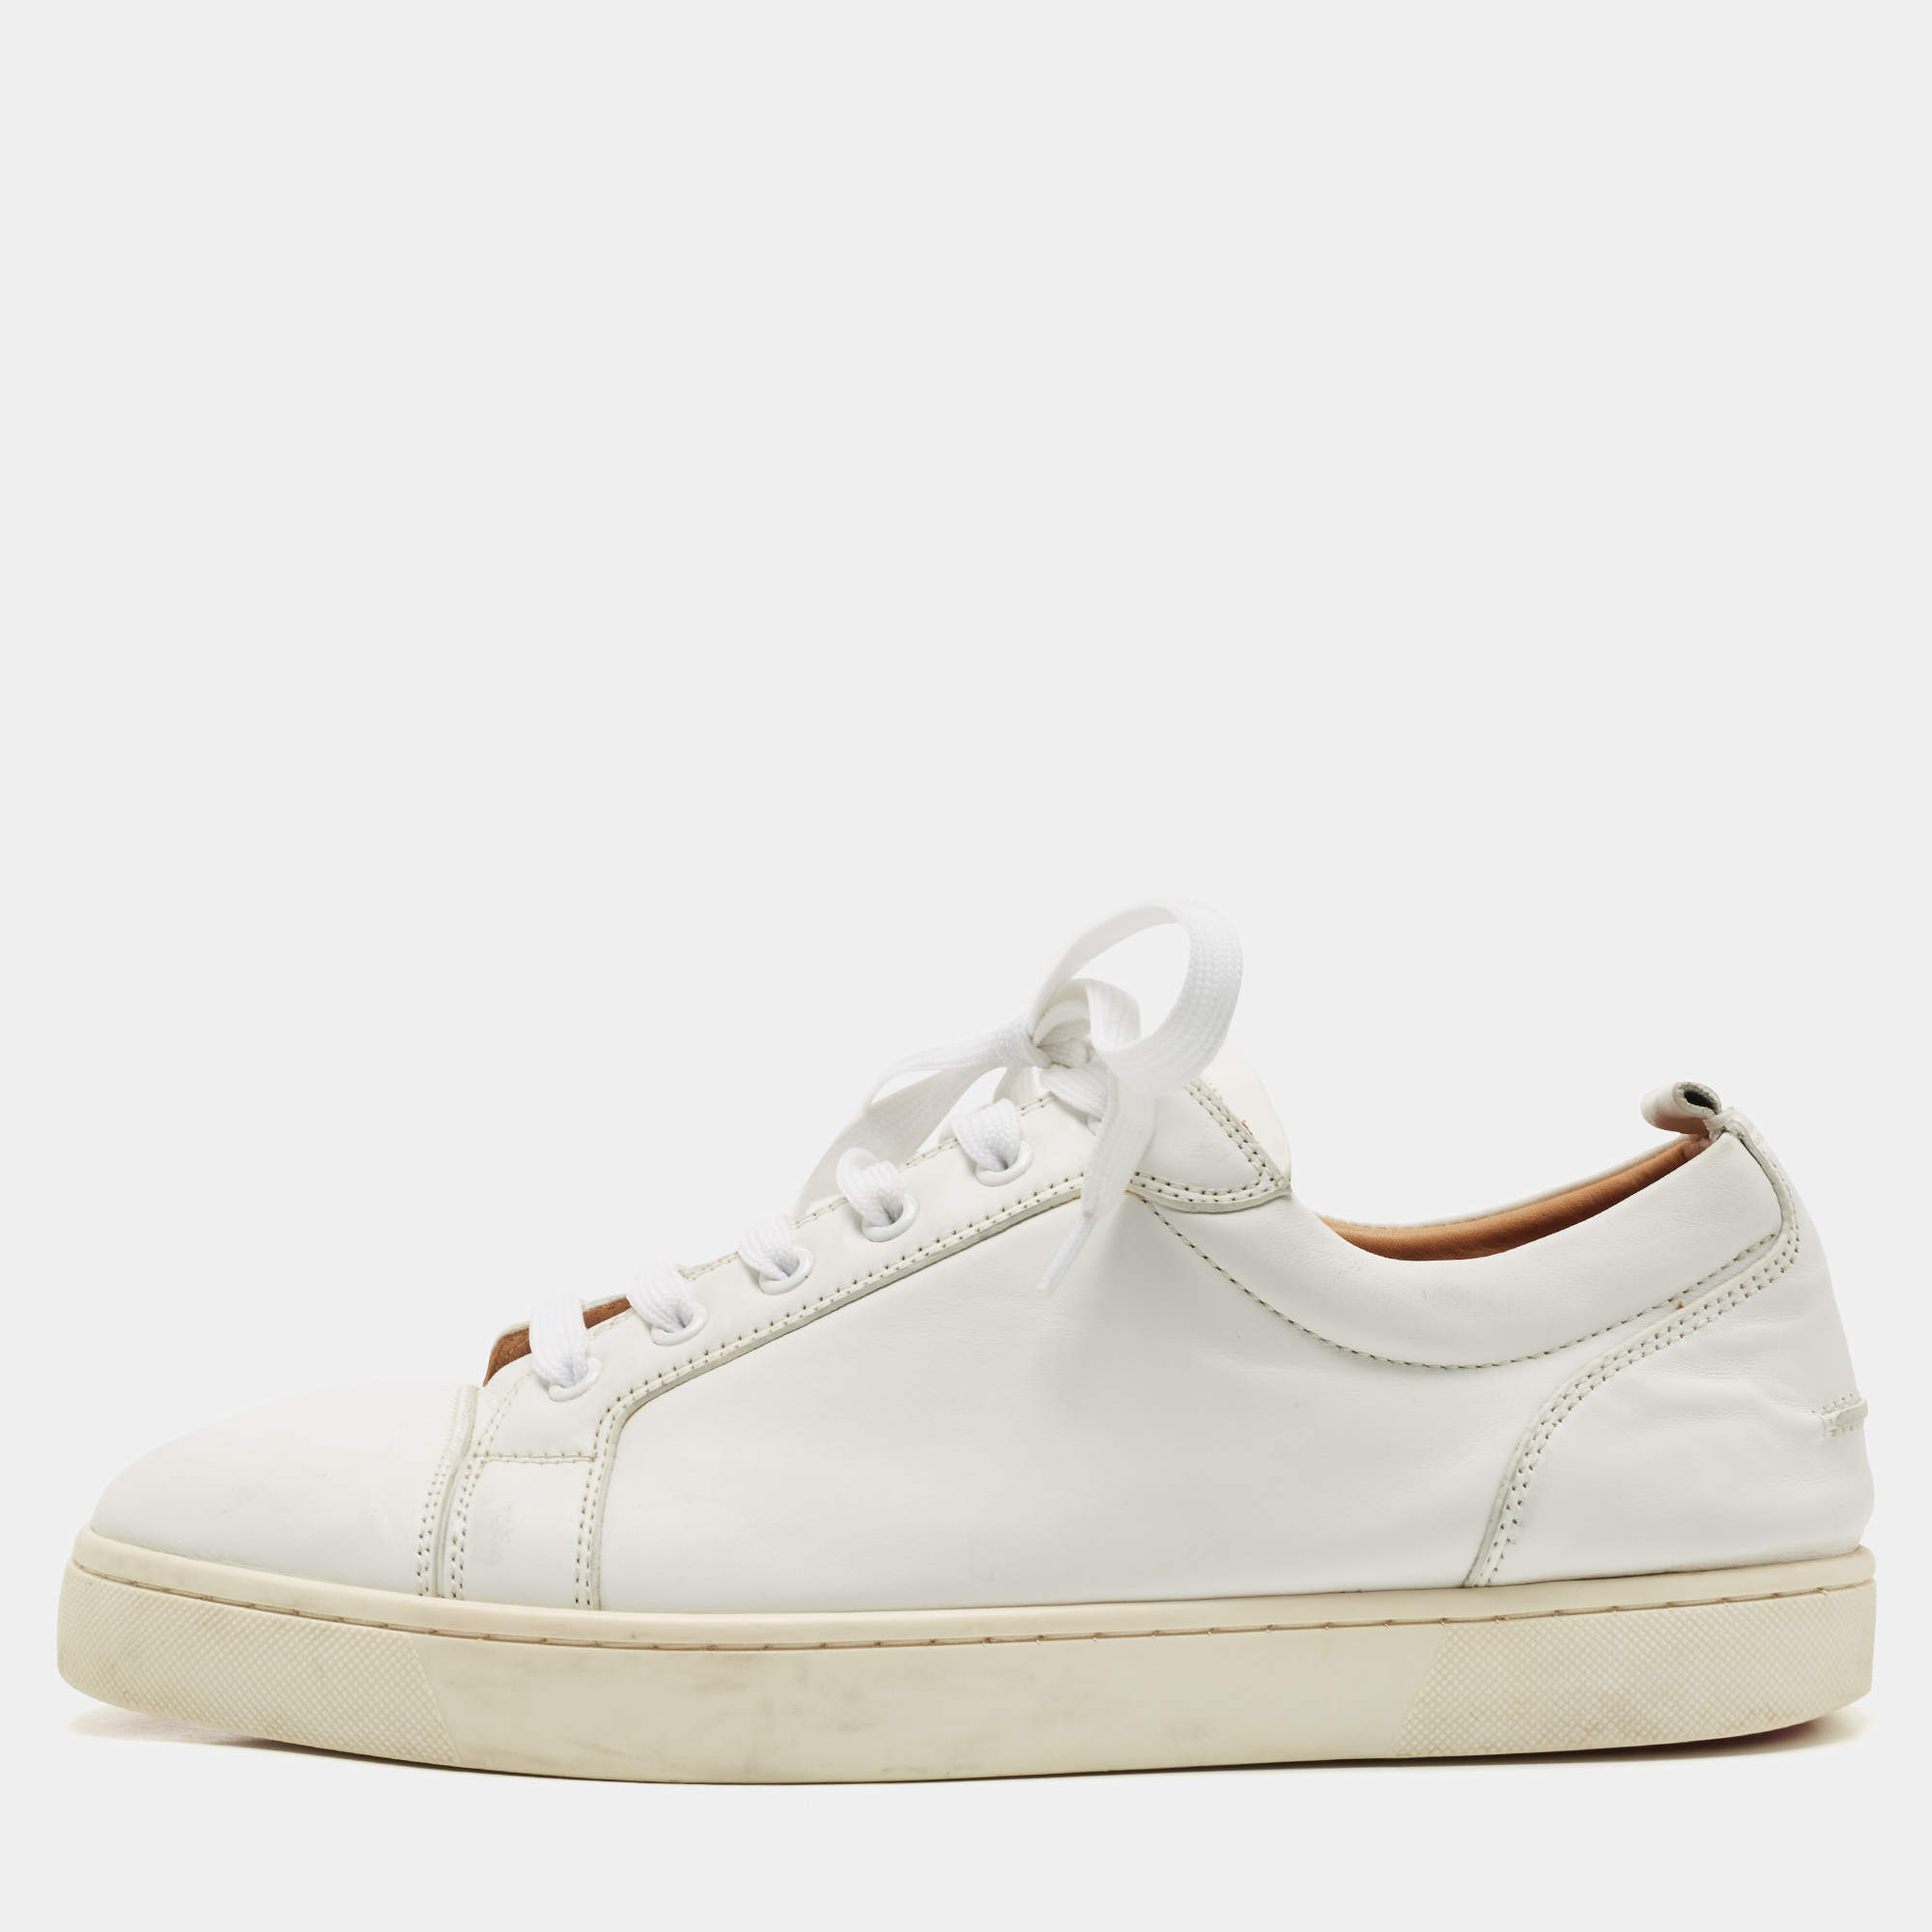 Christian Louboutin white Leather Vieira Sneakers